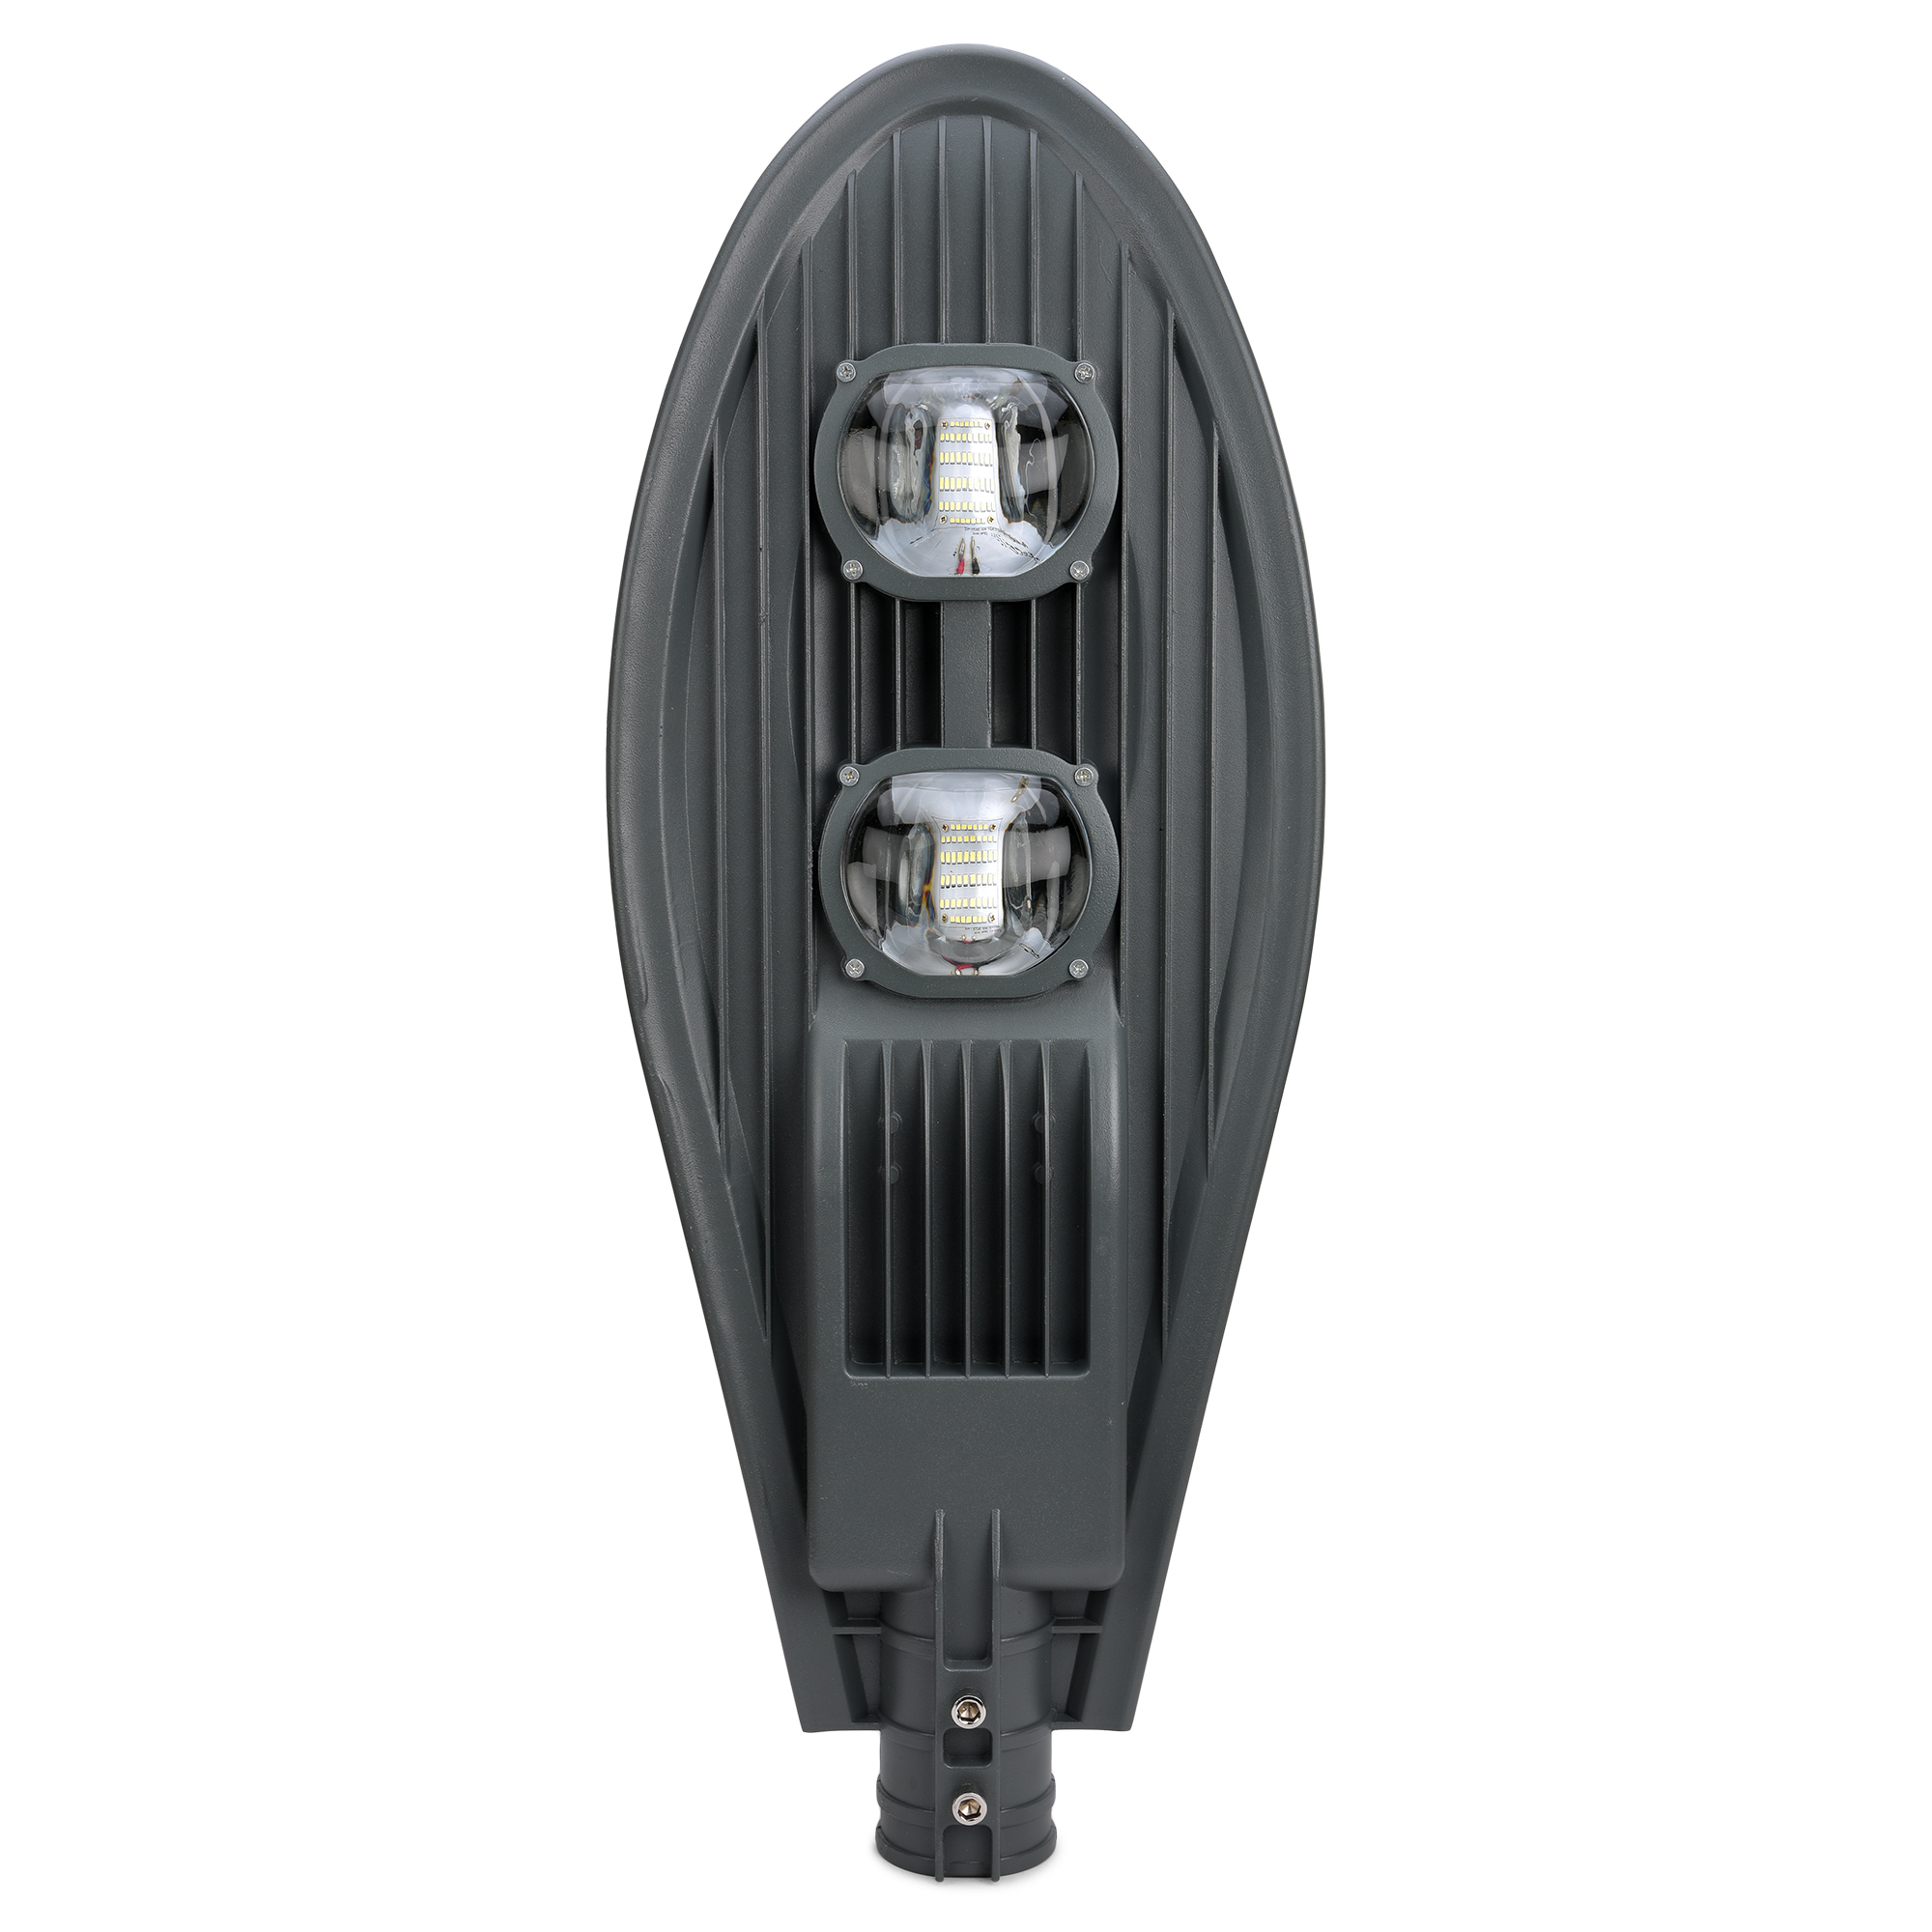 FOS LED Street Light 100W - 10000 Lumens (6500k - 4000k - 2700k)